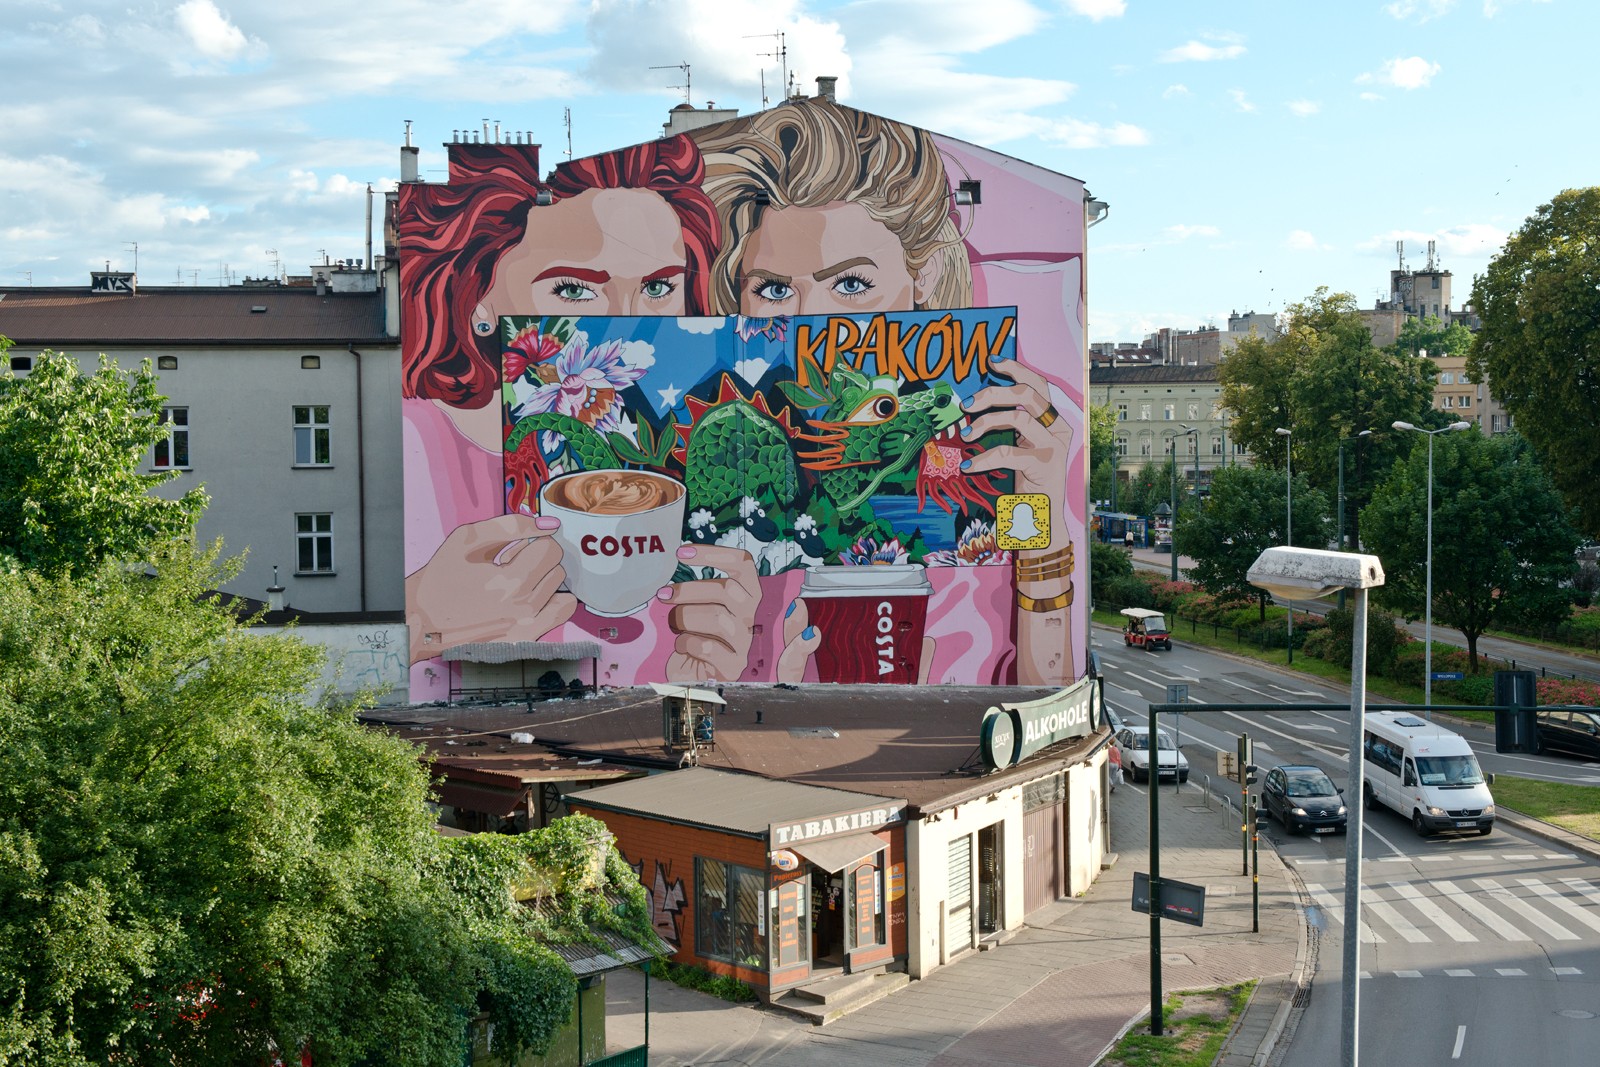 Mural w Krakowie przy ulicy Dietla 111 projektu ilustratorki Olki Osadzińskiej namalowany ręcznie przez artystów na zlecenie marki Costa Coffee | kampania murali dla Costa Coffee - Polscy ilustratorzy | Portfolio